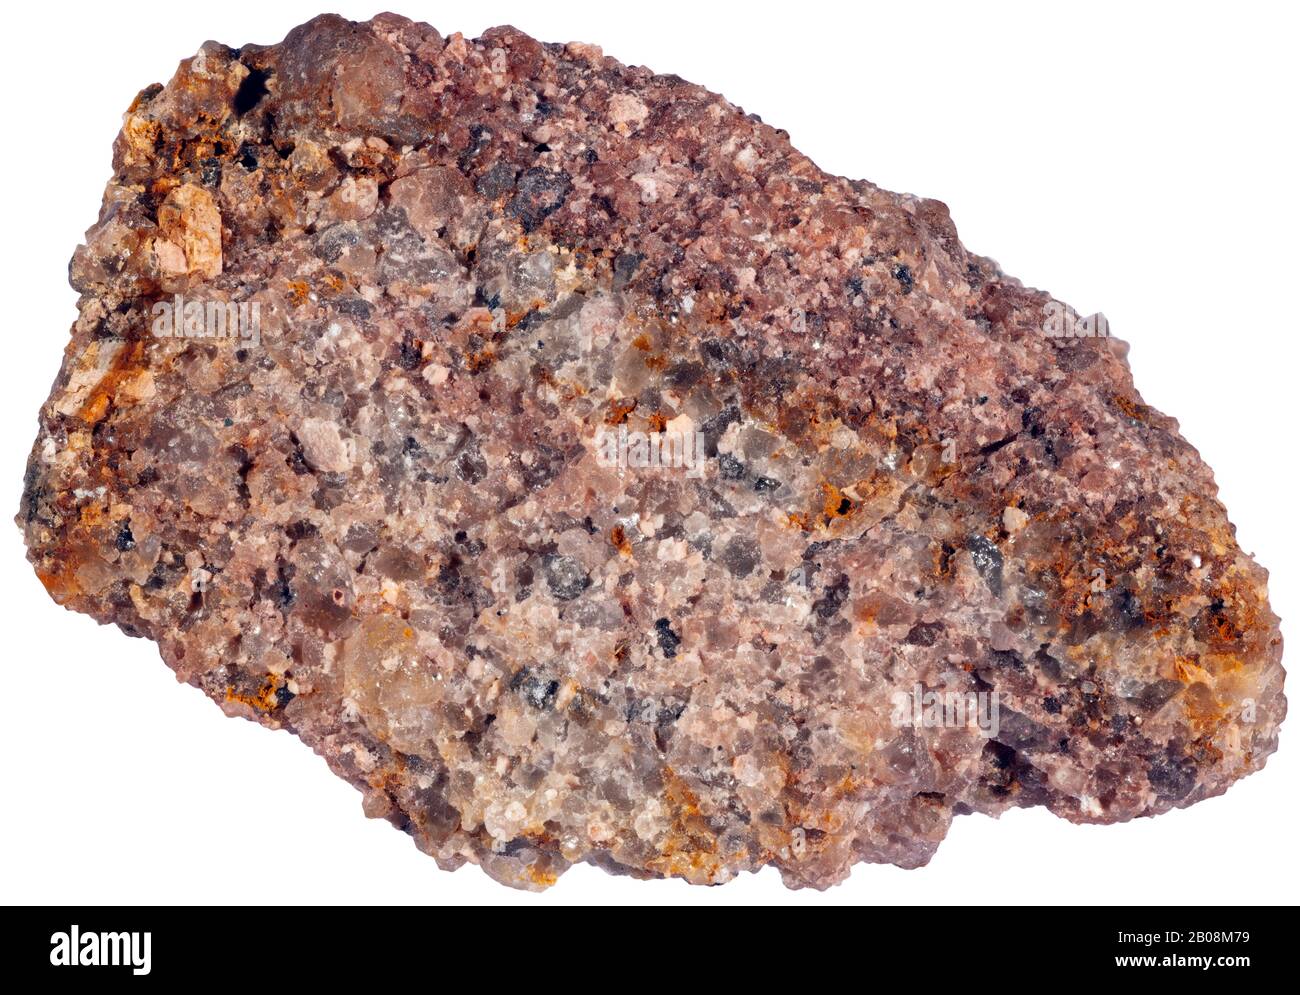 Sandstein, Siliklastic, Grenville, Quebec Sandstein ist ein klastisches sedimentäres Gestein, das hauptsächlich aus sandgroßen (0,0625 bis 2 mm) Mineralpartikeln oder besteht Stockfoto